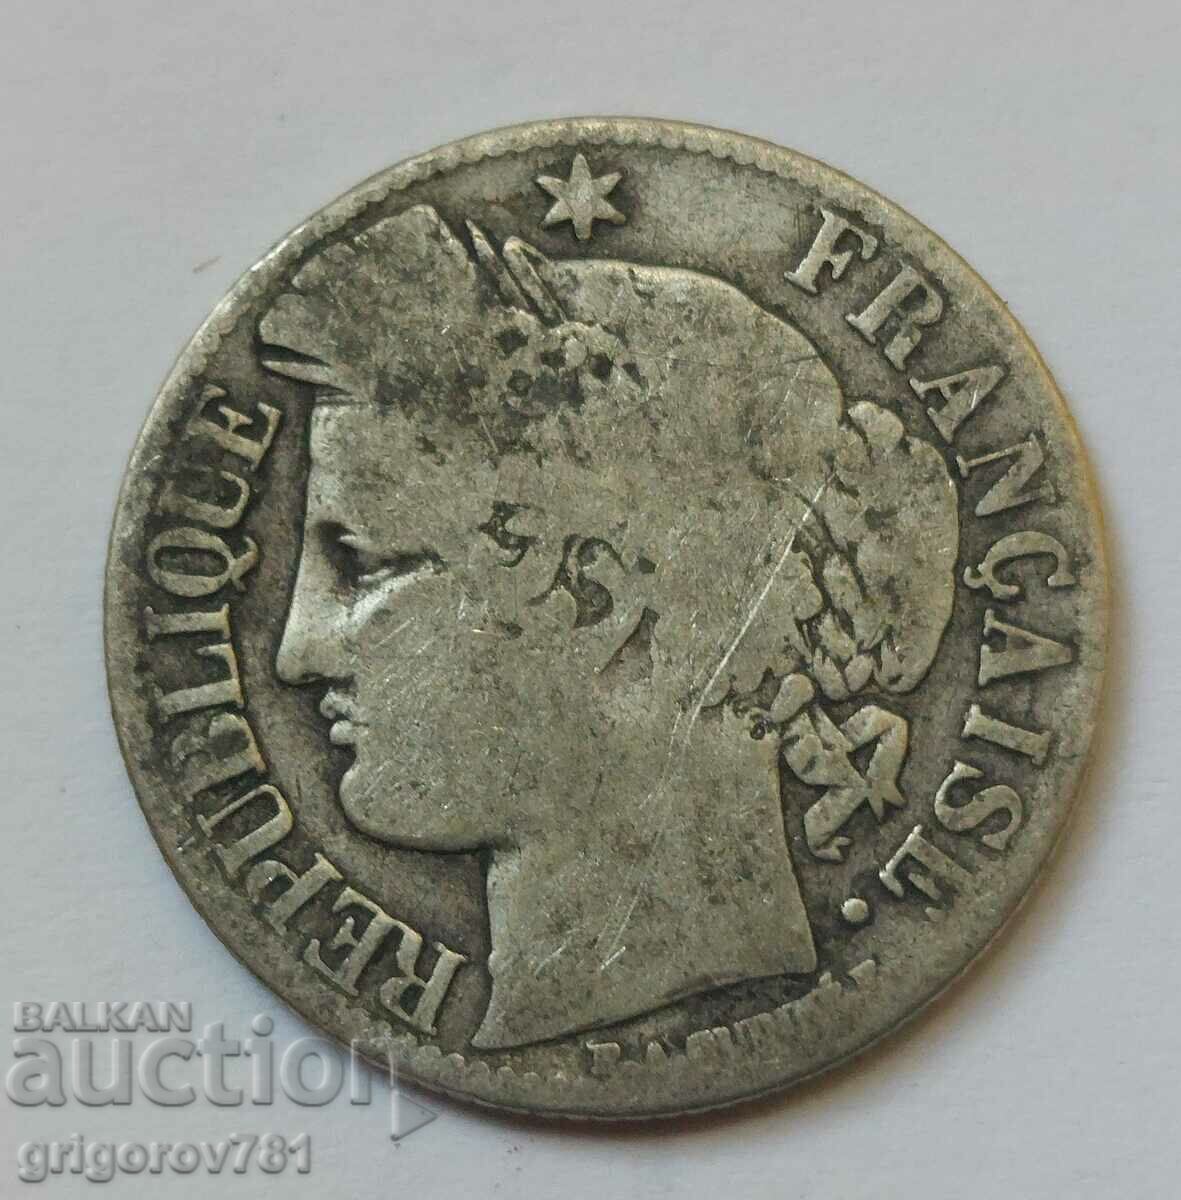 Ασήμι 1 φράγκου Γαλλία 1871 A - Ασημένιο νόμισμα #35